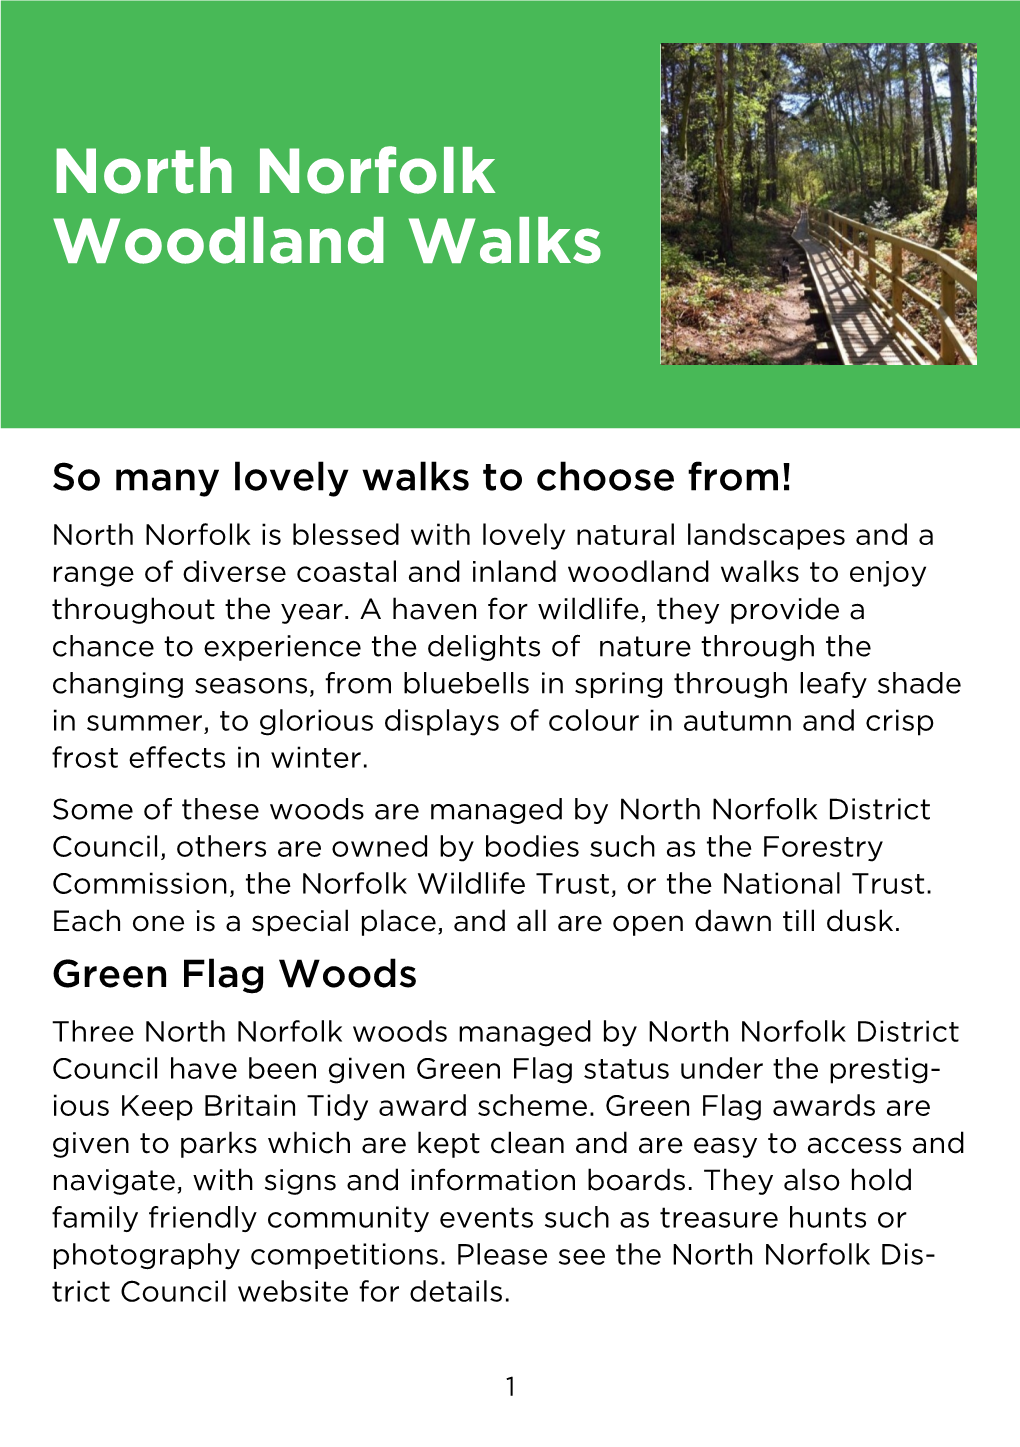 North Norfolk Woodland Walks